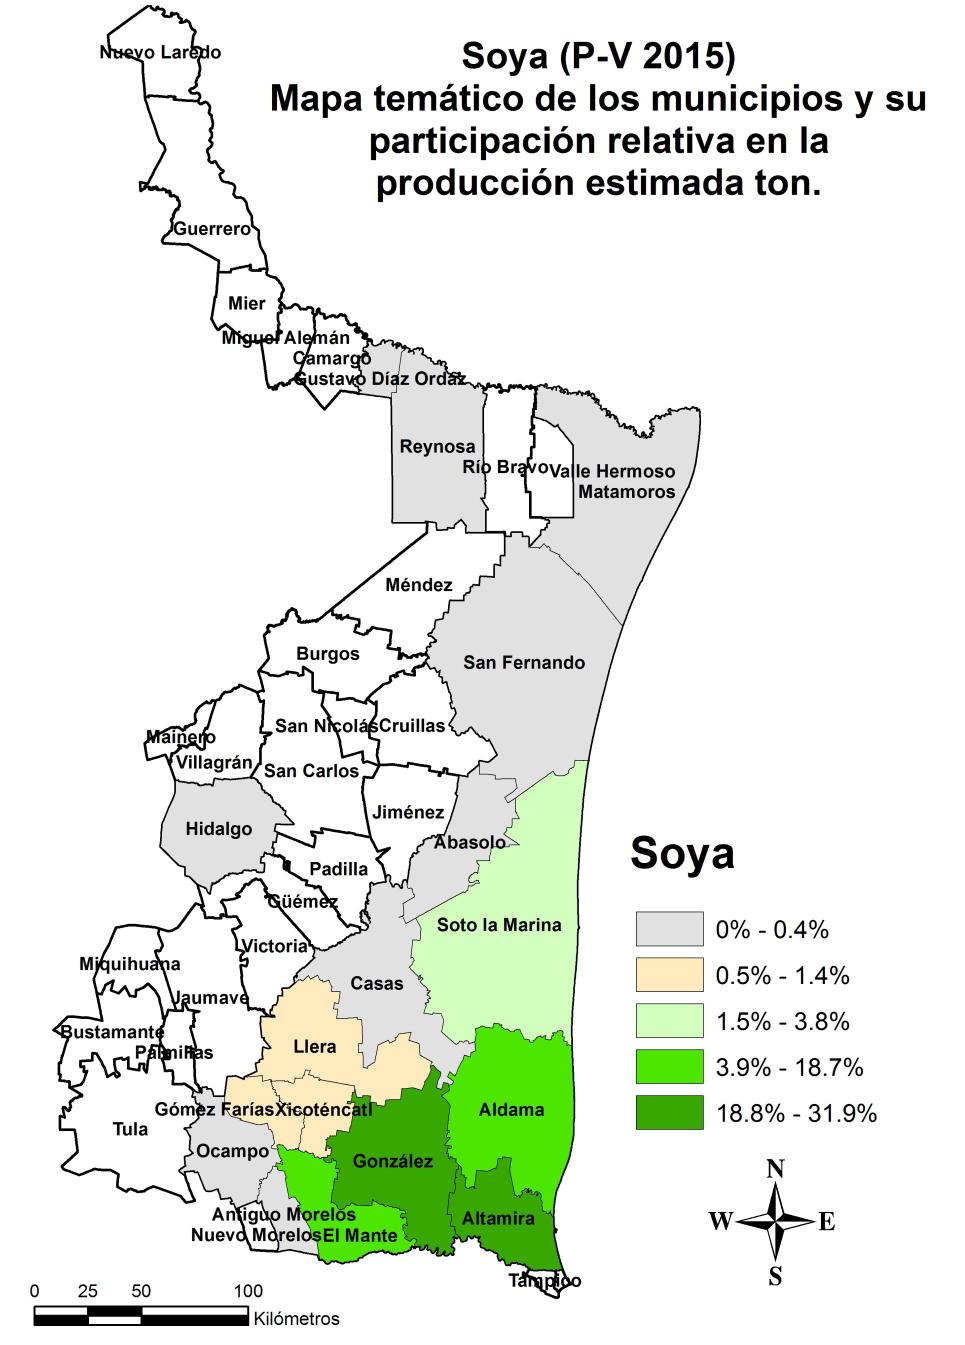 Geografía Mapas Temáticos Producción estimada de Sorgo Grano y Soya ciclo P-V 2015 Sorgo Grano Para el cultivo de sorgo grano, ya inicio la cosecha en este bimestre principalmente en la zona sur que